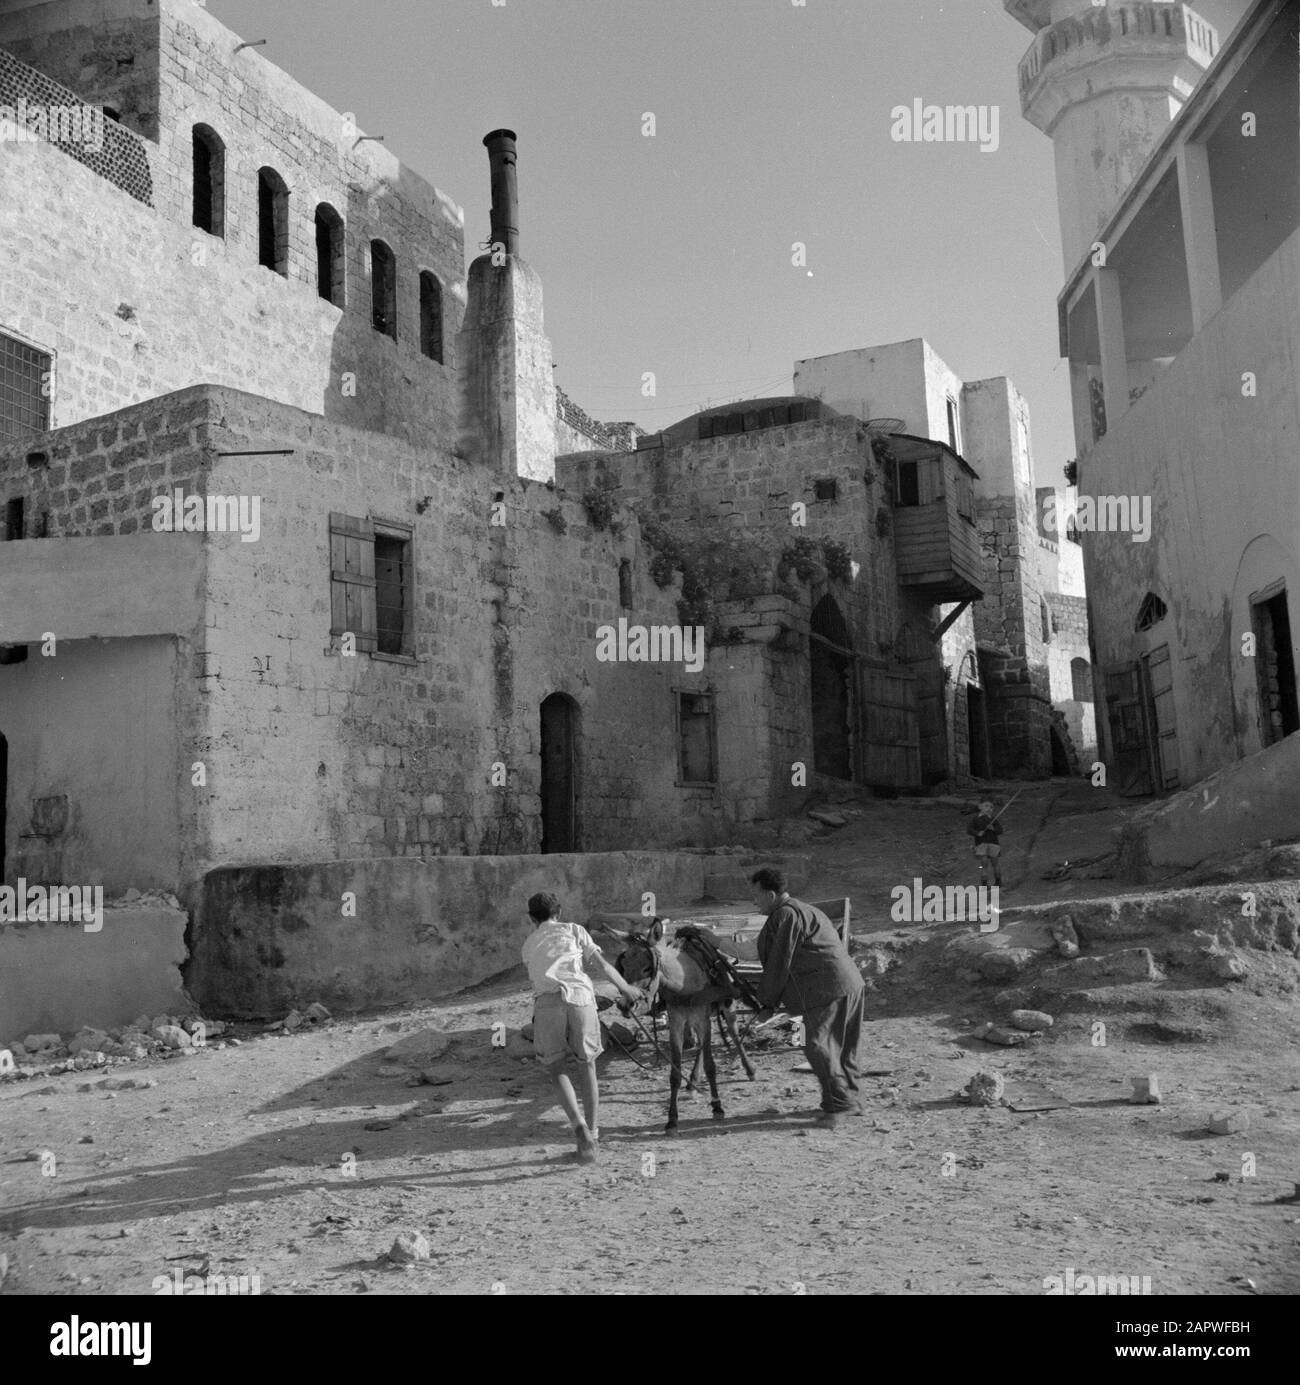 Israël 1948-1949: Jaffa hommes avec un chariot âne dans une rue non pavée, vraisemblablement à Jaffa Date: 1948 lieu: Israël, Jaffa mots clés: Ânes, charrettes, images de rue, maisons Banque D'Images